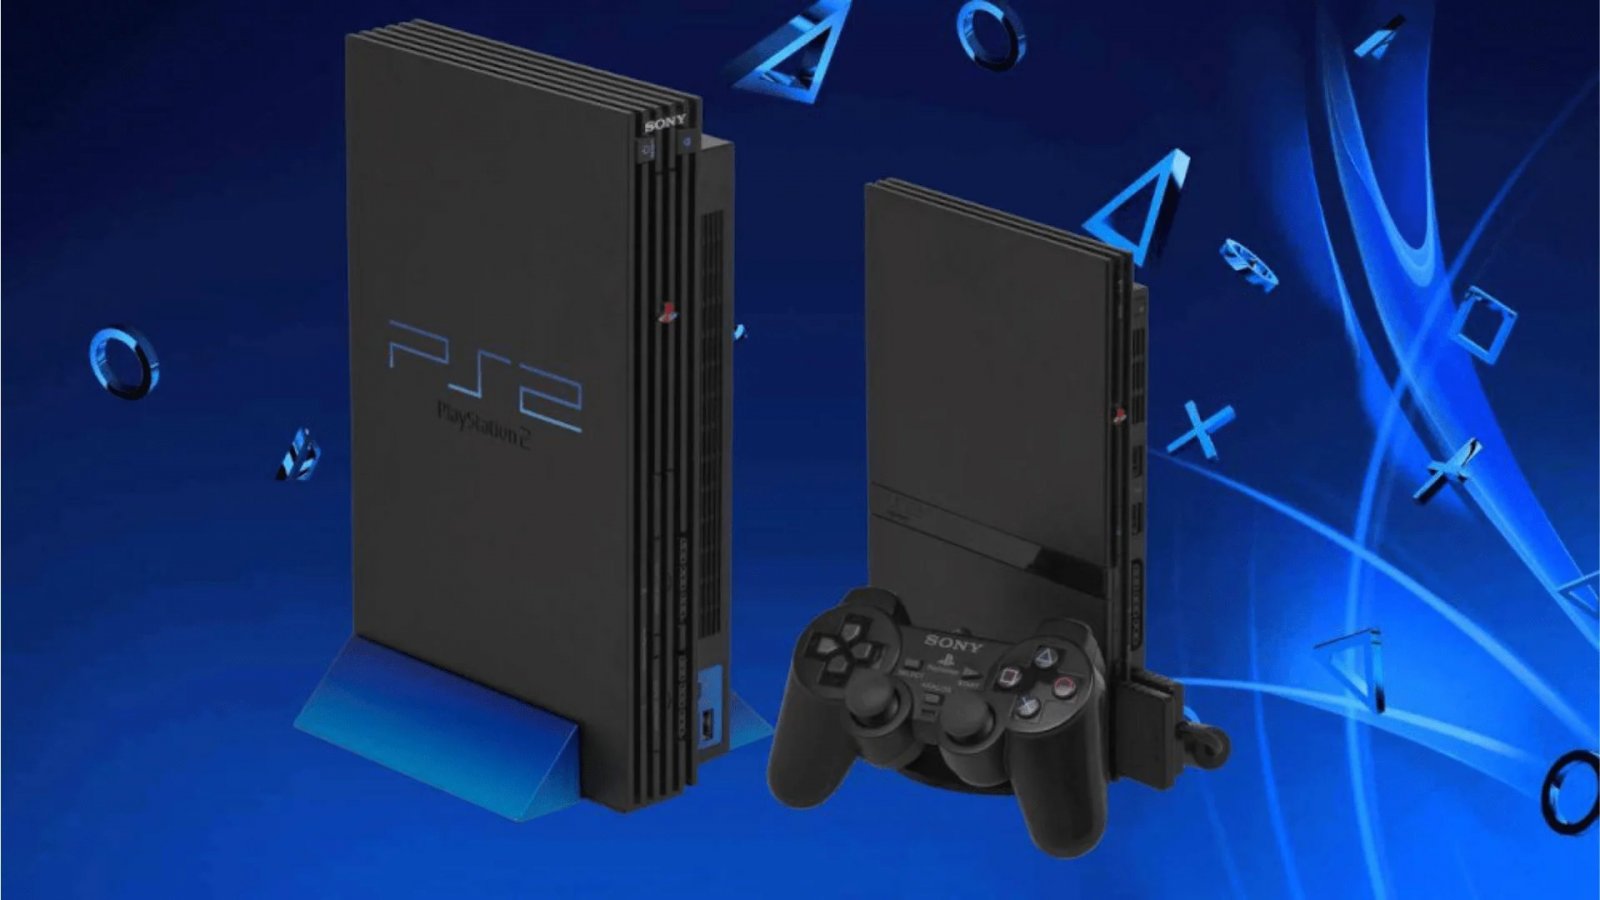 PS2 ha venduto 160 milioni di unità: Jim Ryan aggiorna i dati ufficiali